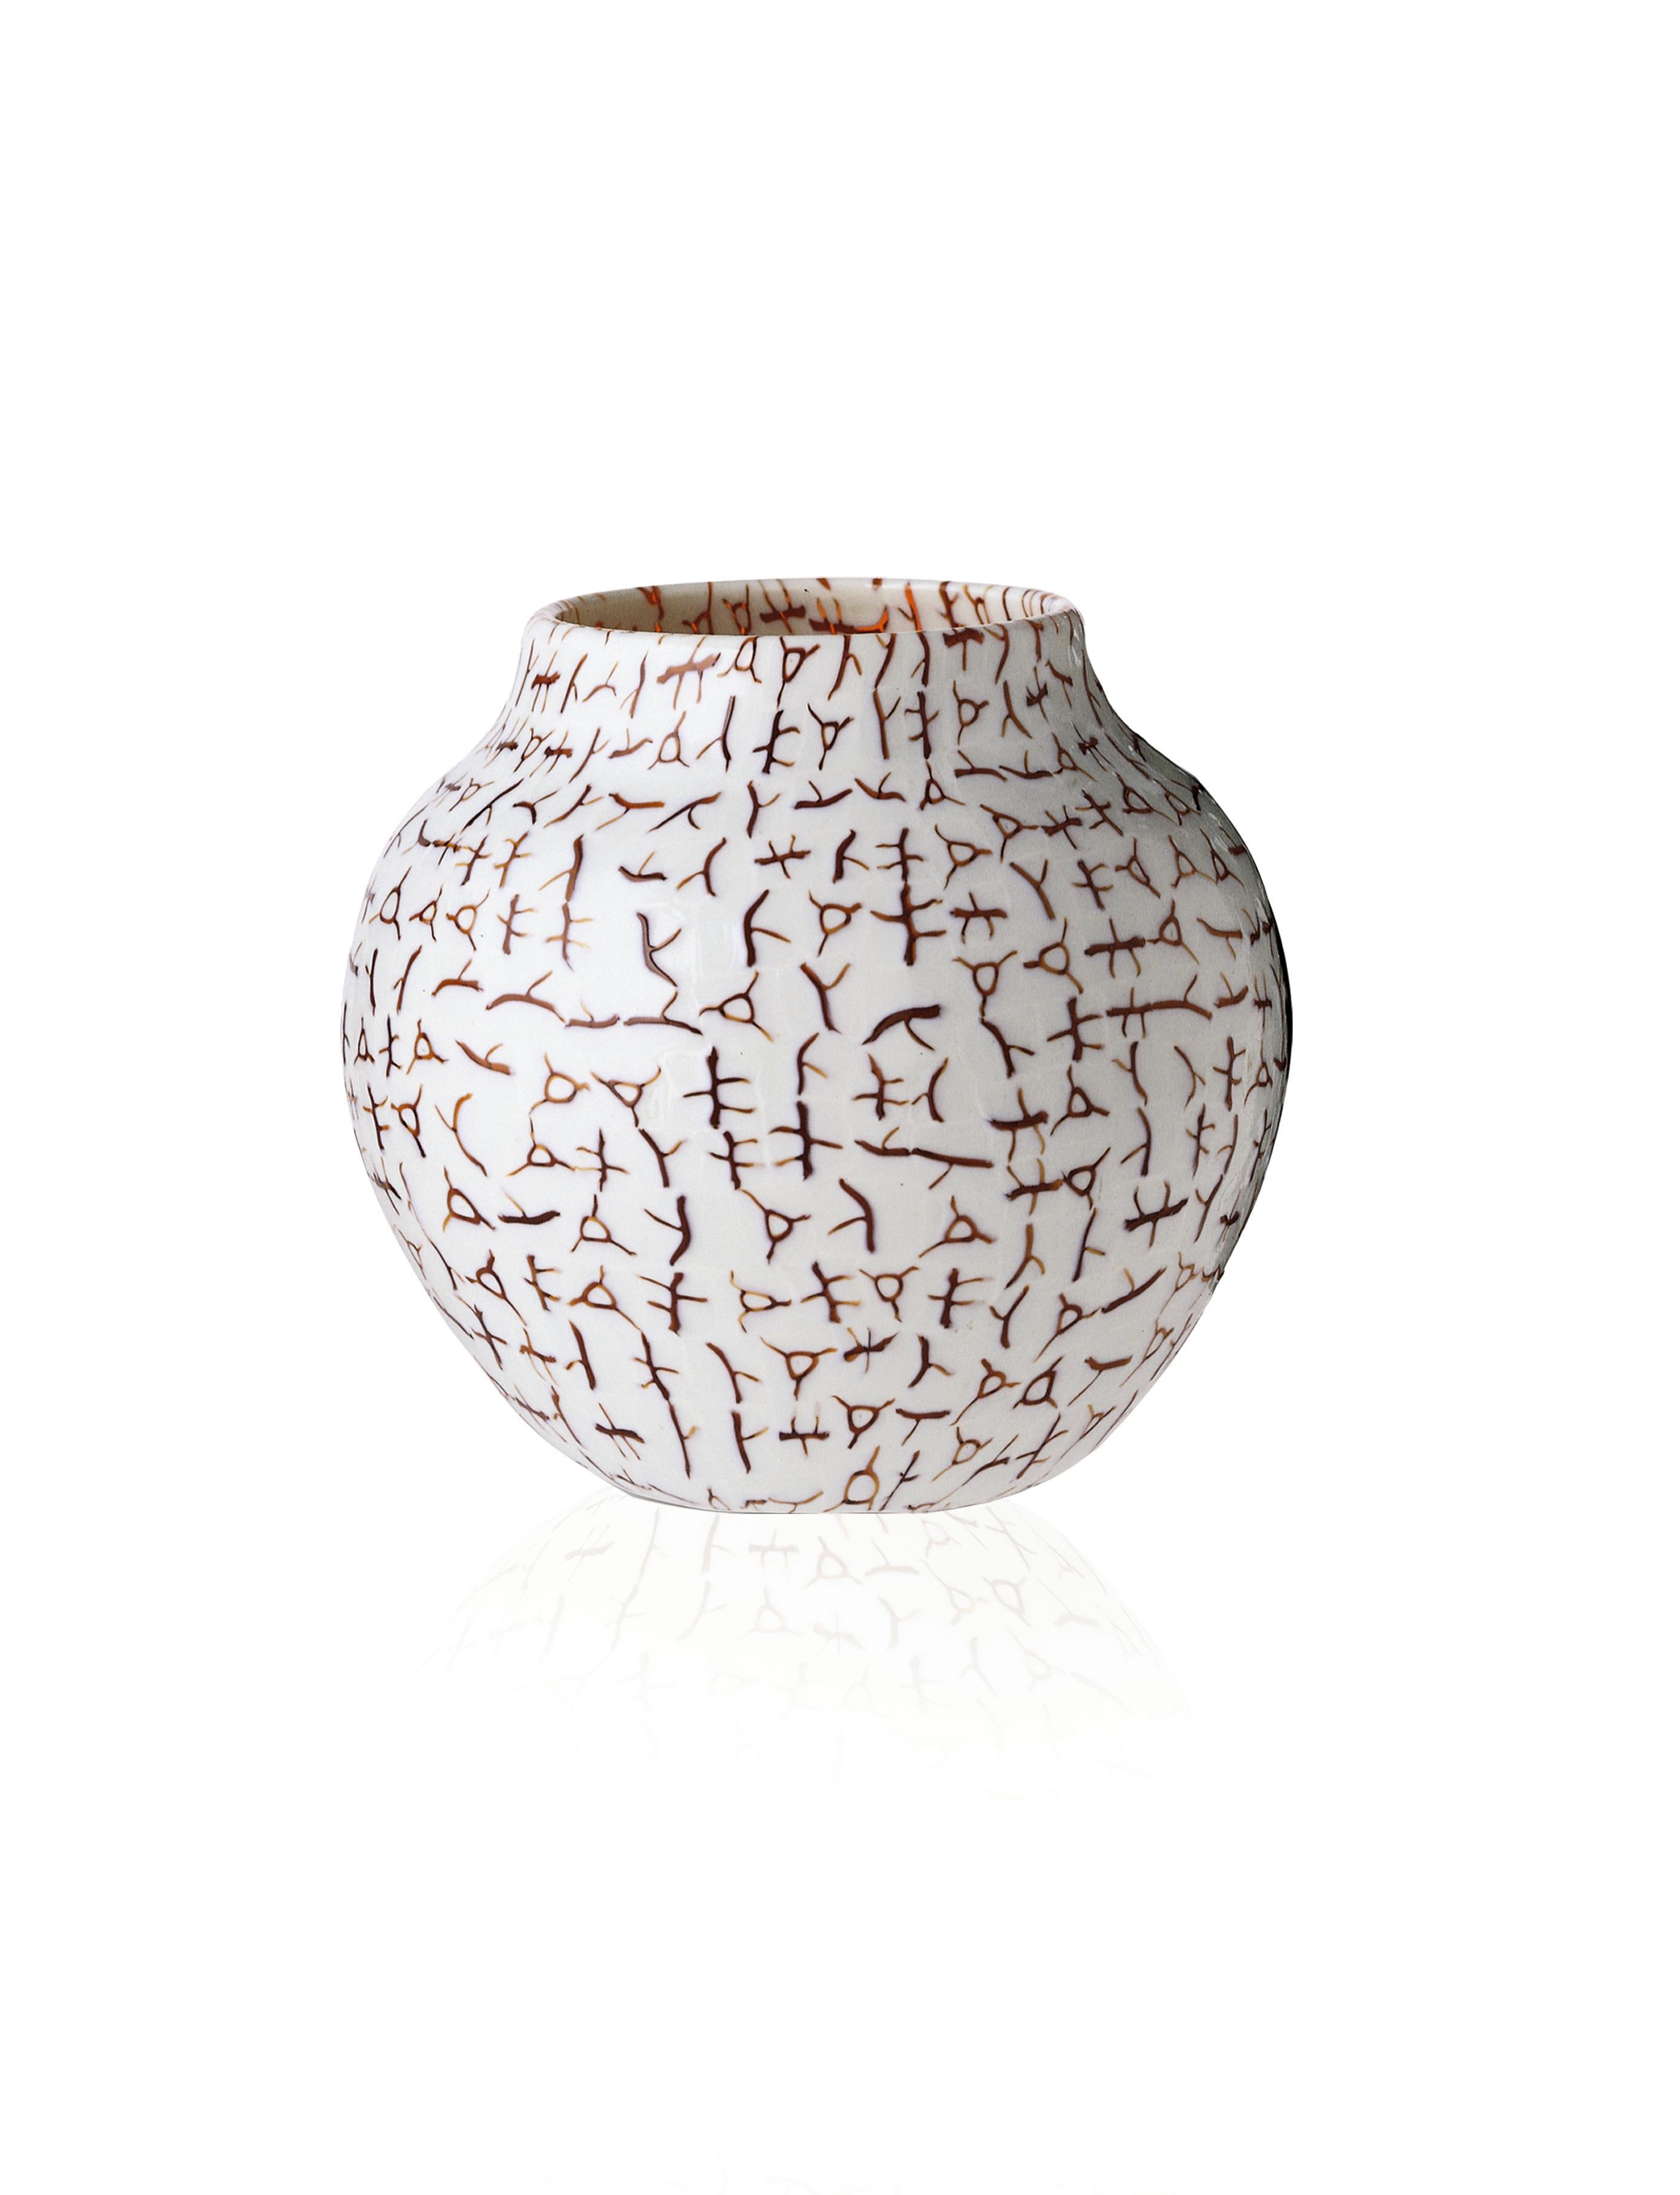 Vase en verre de Venini avec un corps cylindrique et un motif à lignes fines sur la surface du verre. Présenté dans la classe de couleur thé et ivoire conçue en 1984. Parfait pour la décoration intérieure en tant que conteneur ou pièce forte pour